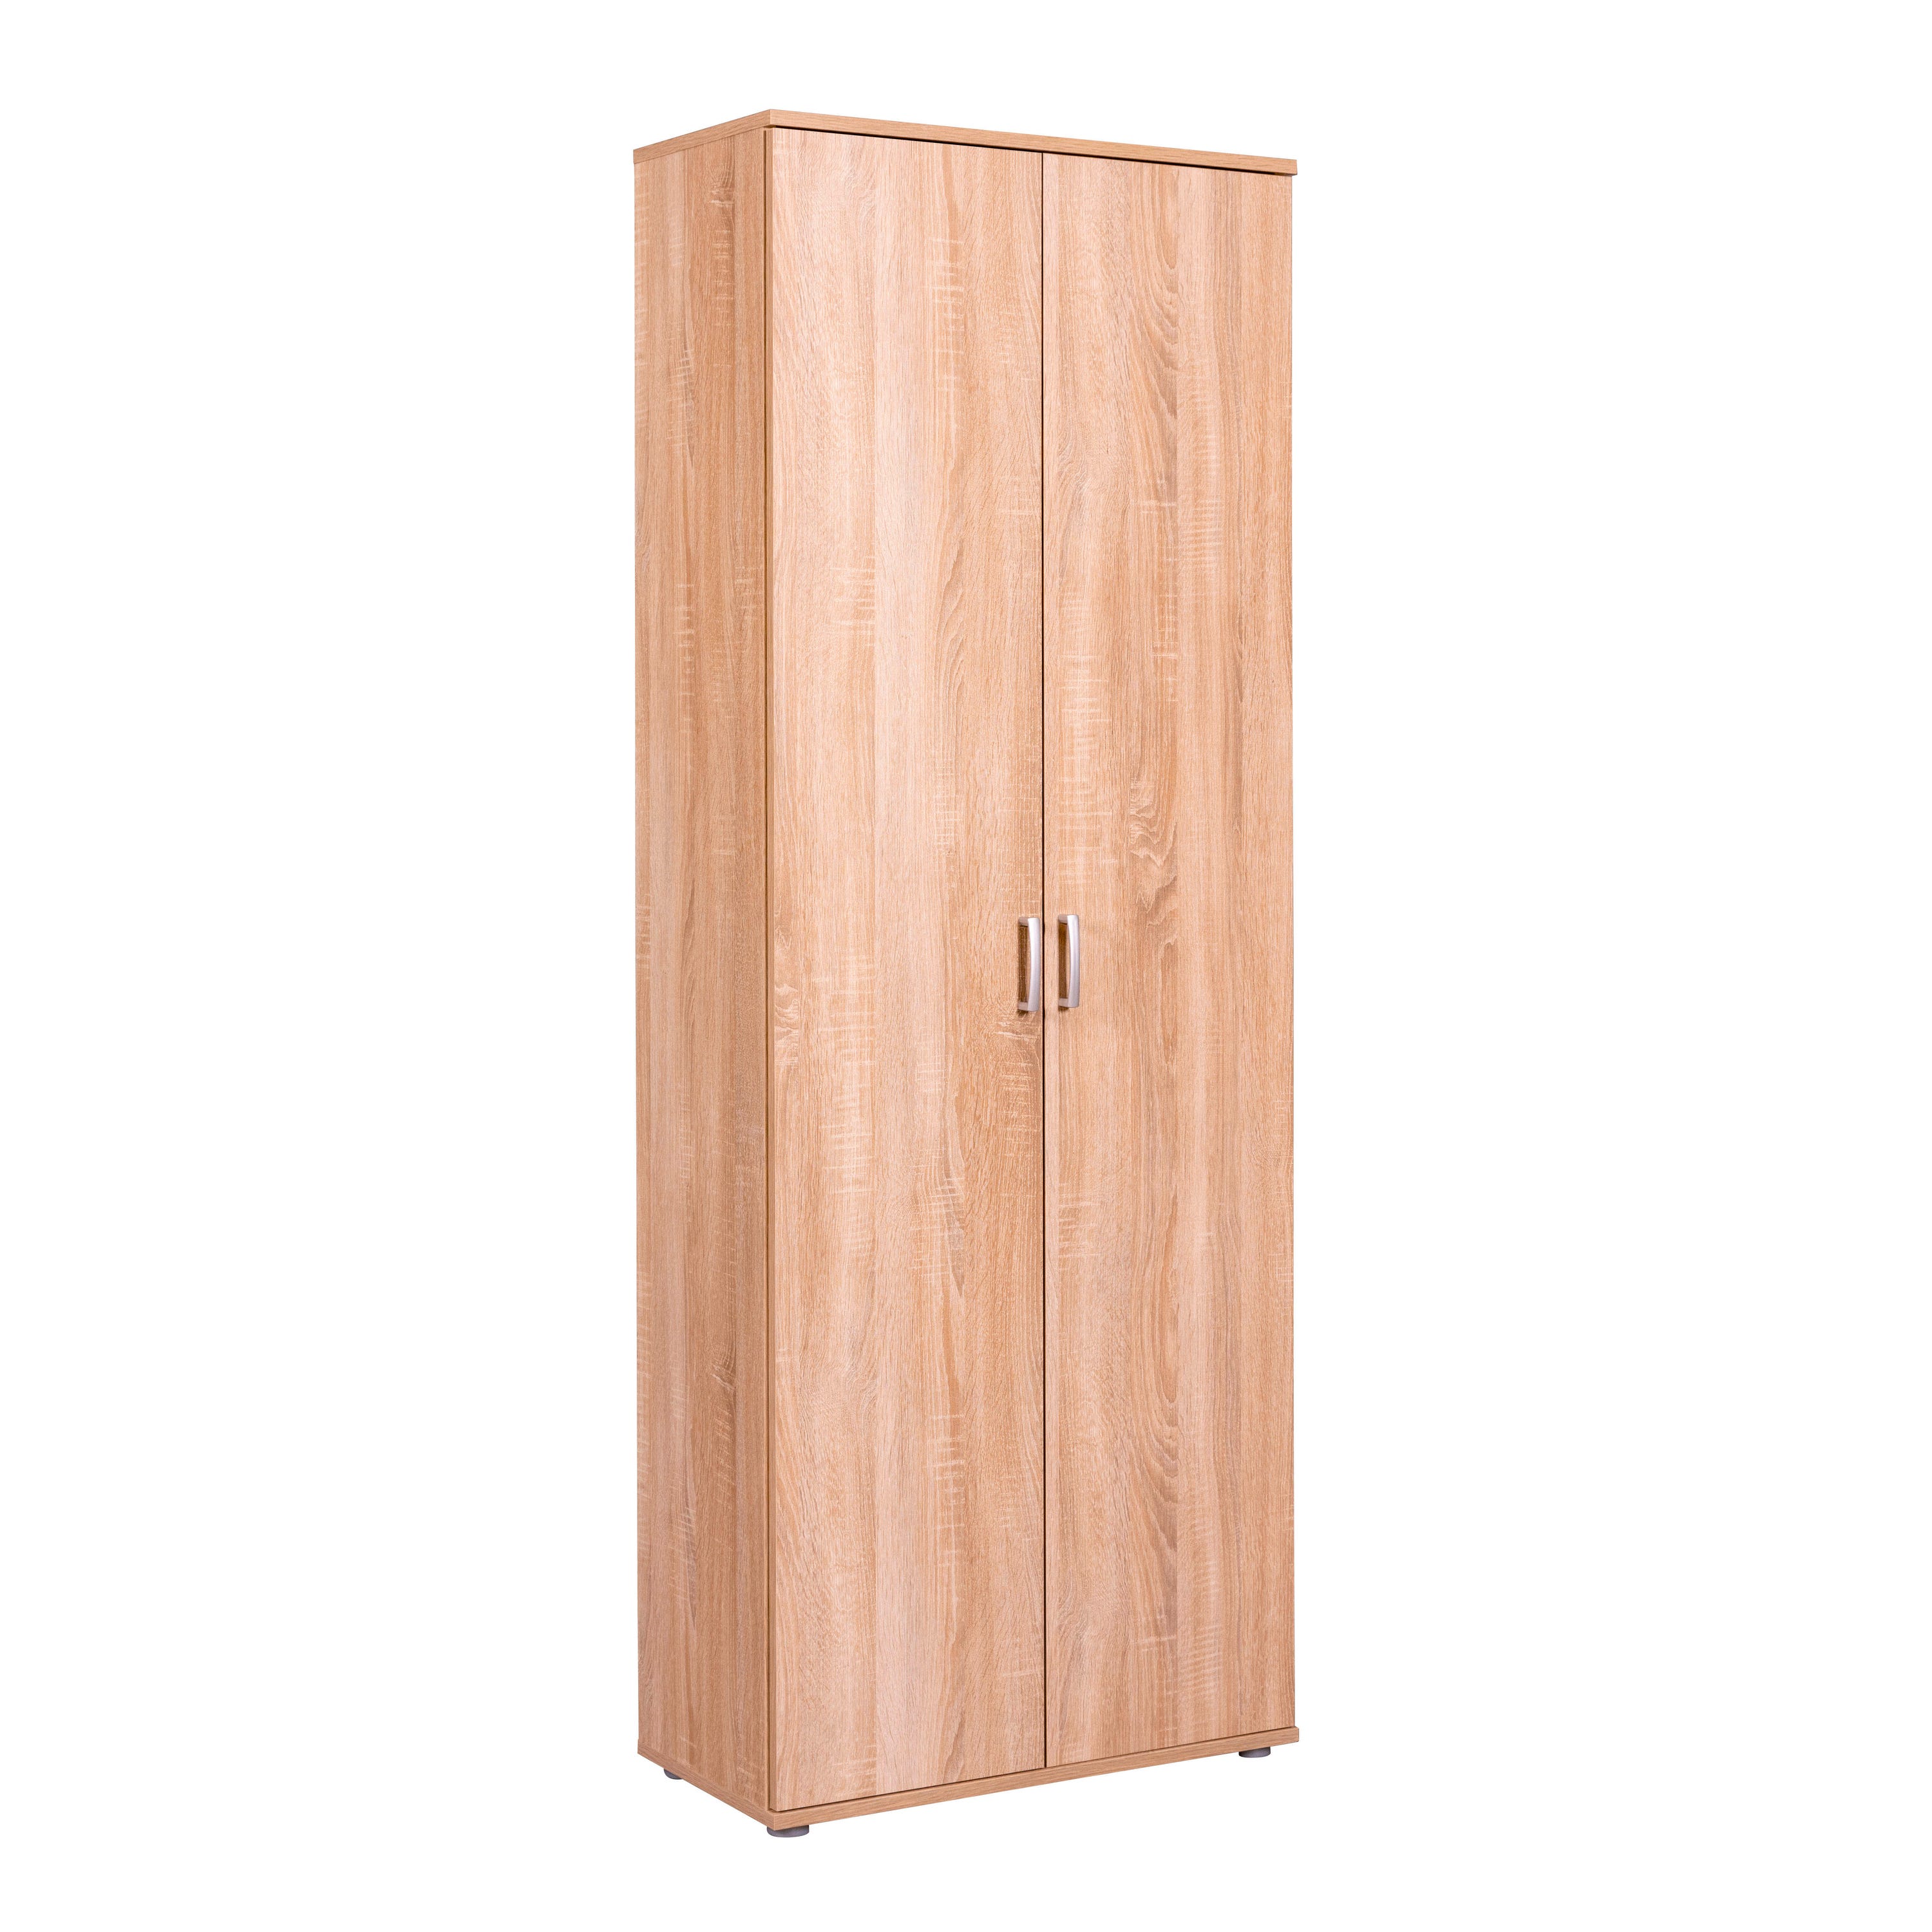 Comment entretenir une armoire en bois ?